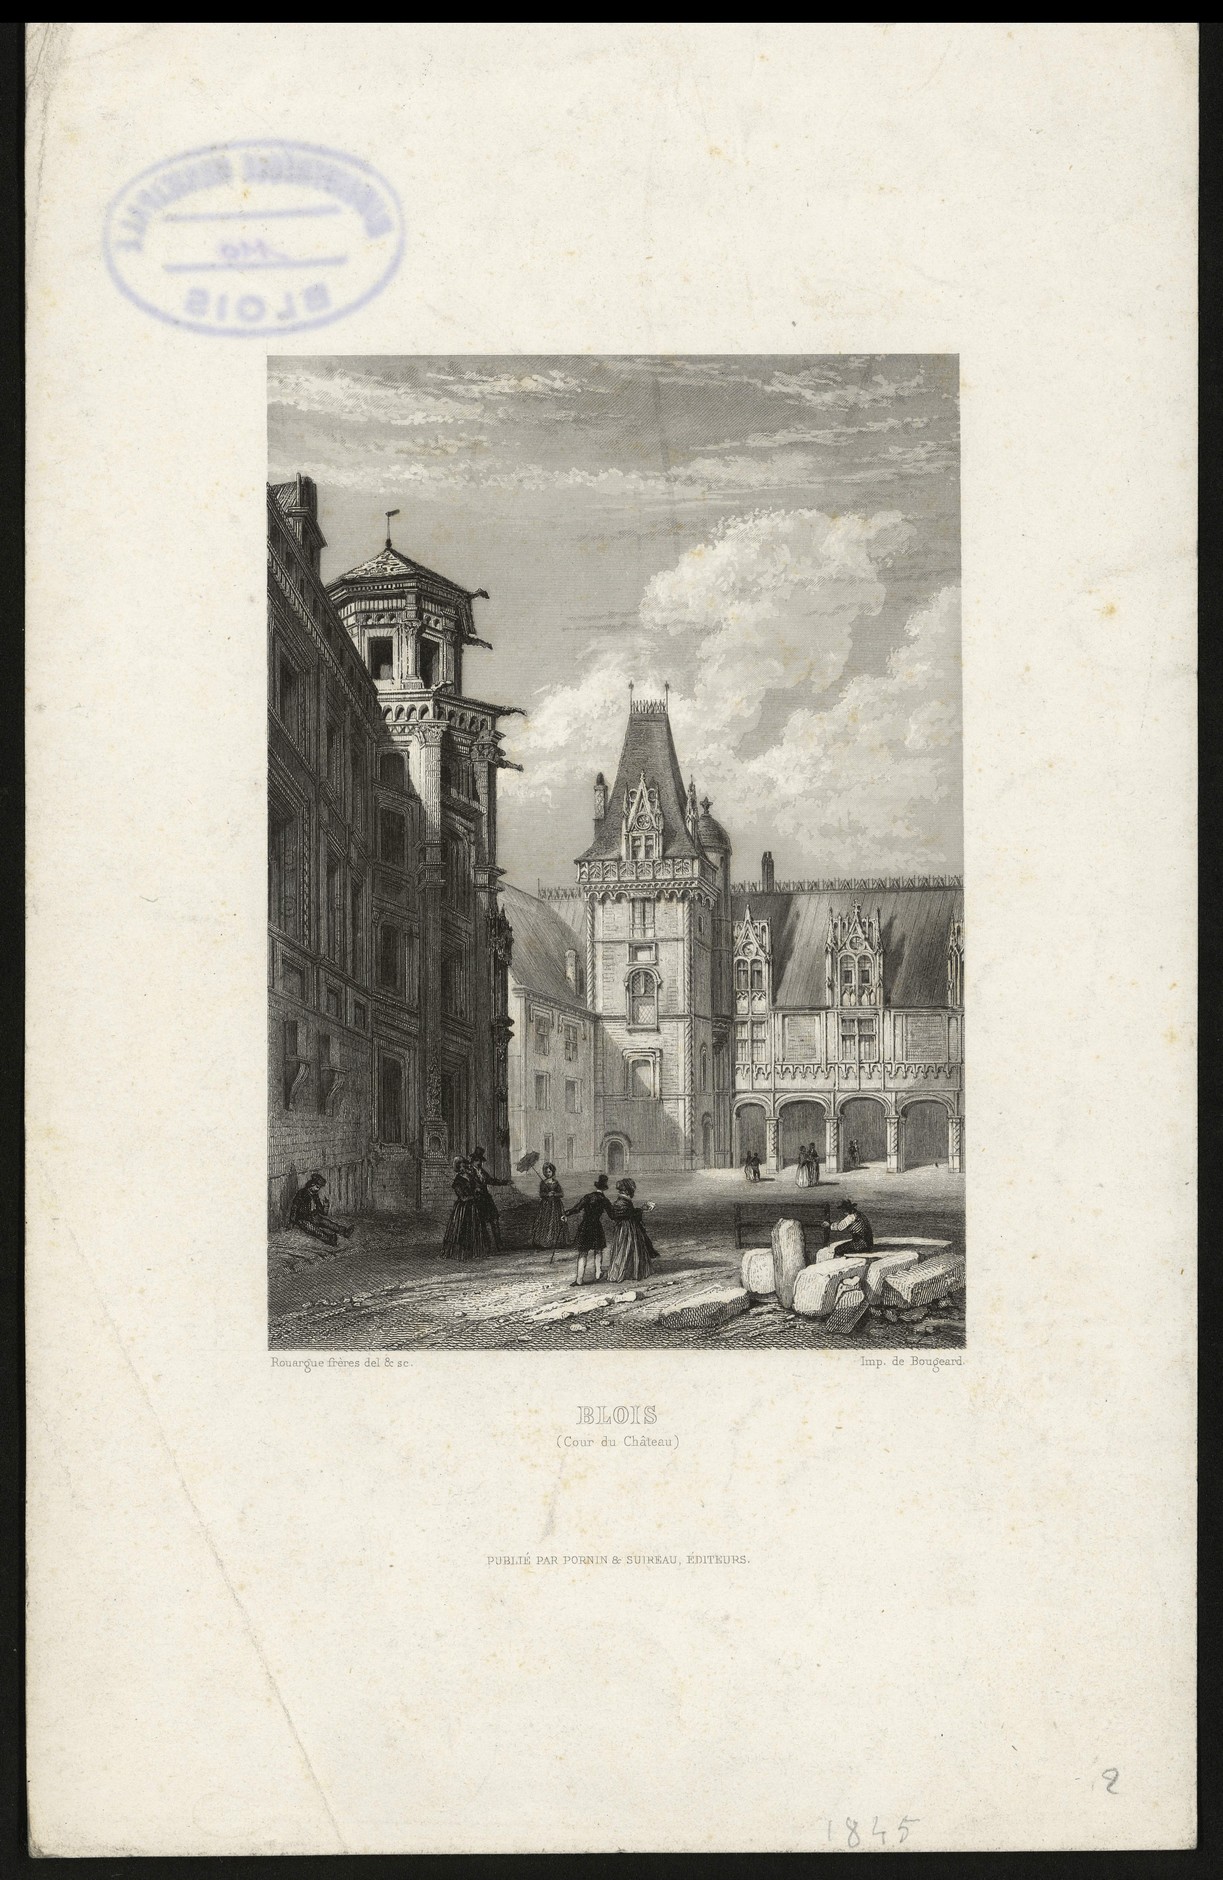 Rouargue, La cour du château de Blois, gravure sur acier 1846